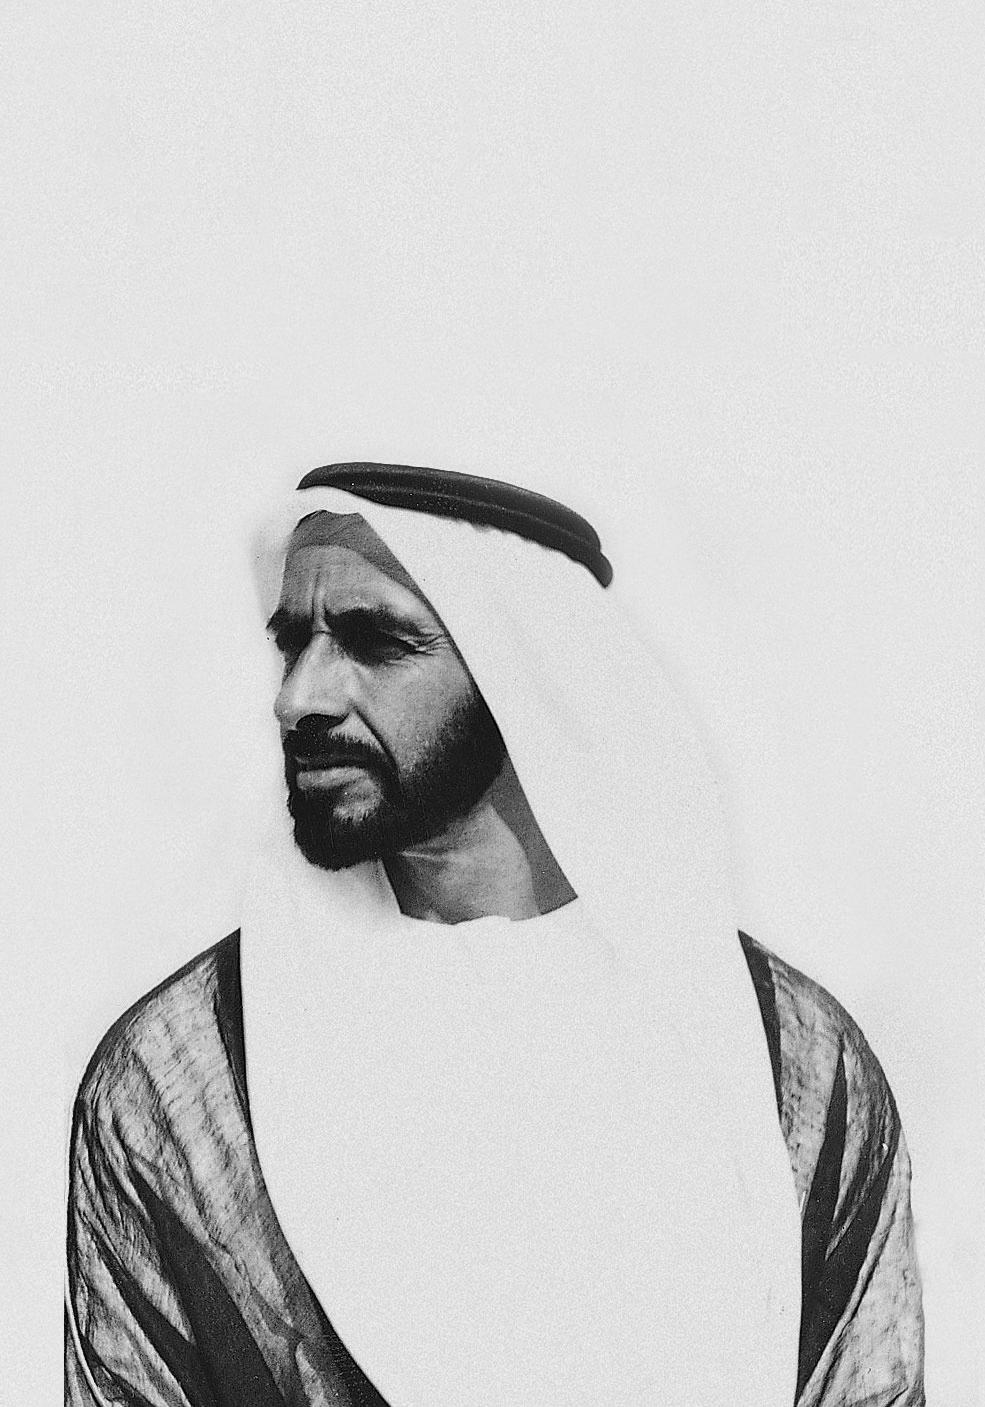 HISTÓRICO Em 2008, a liderança dos Emirados Árabes Nos últimos 11 anos, o prêmio impactou Unidos lançou o Prêmio Zayed Energia do direta e indiretamente mais de 318 Futuro.